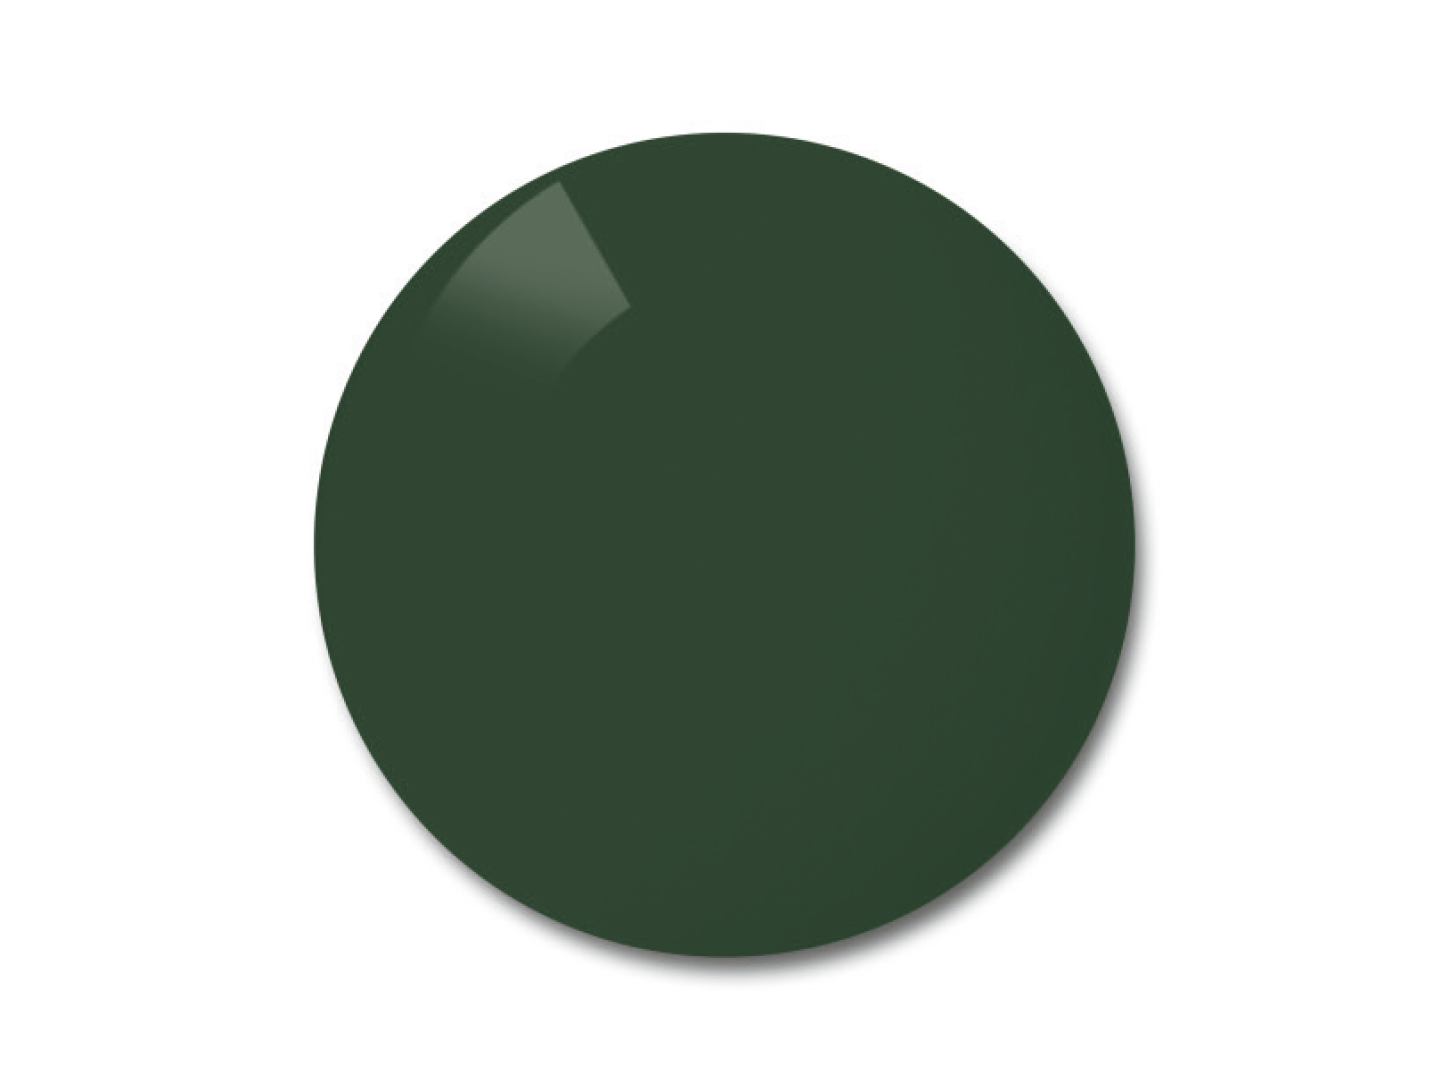 Esempio di colore delle lenti polarizzate Pioneer (grigio-verde).